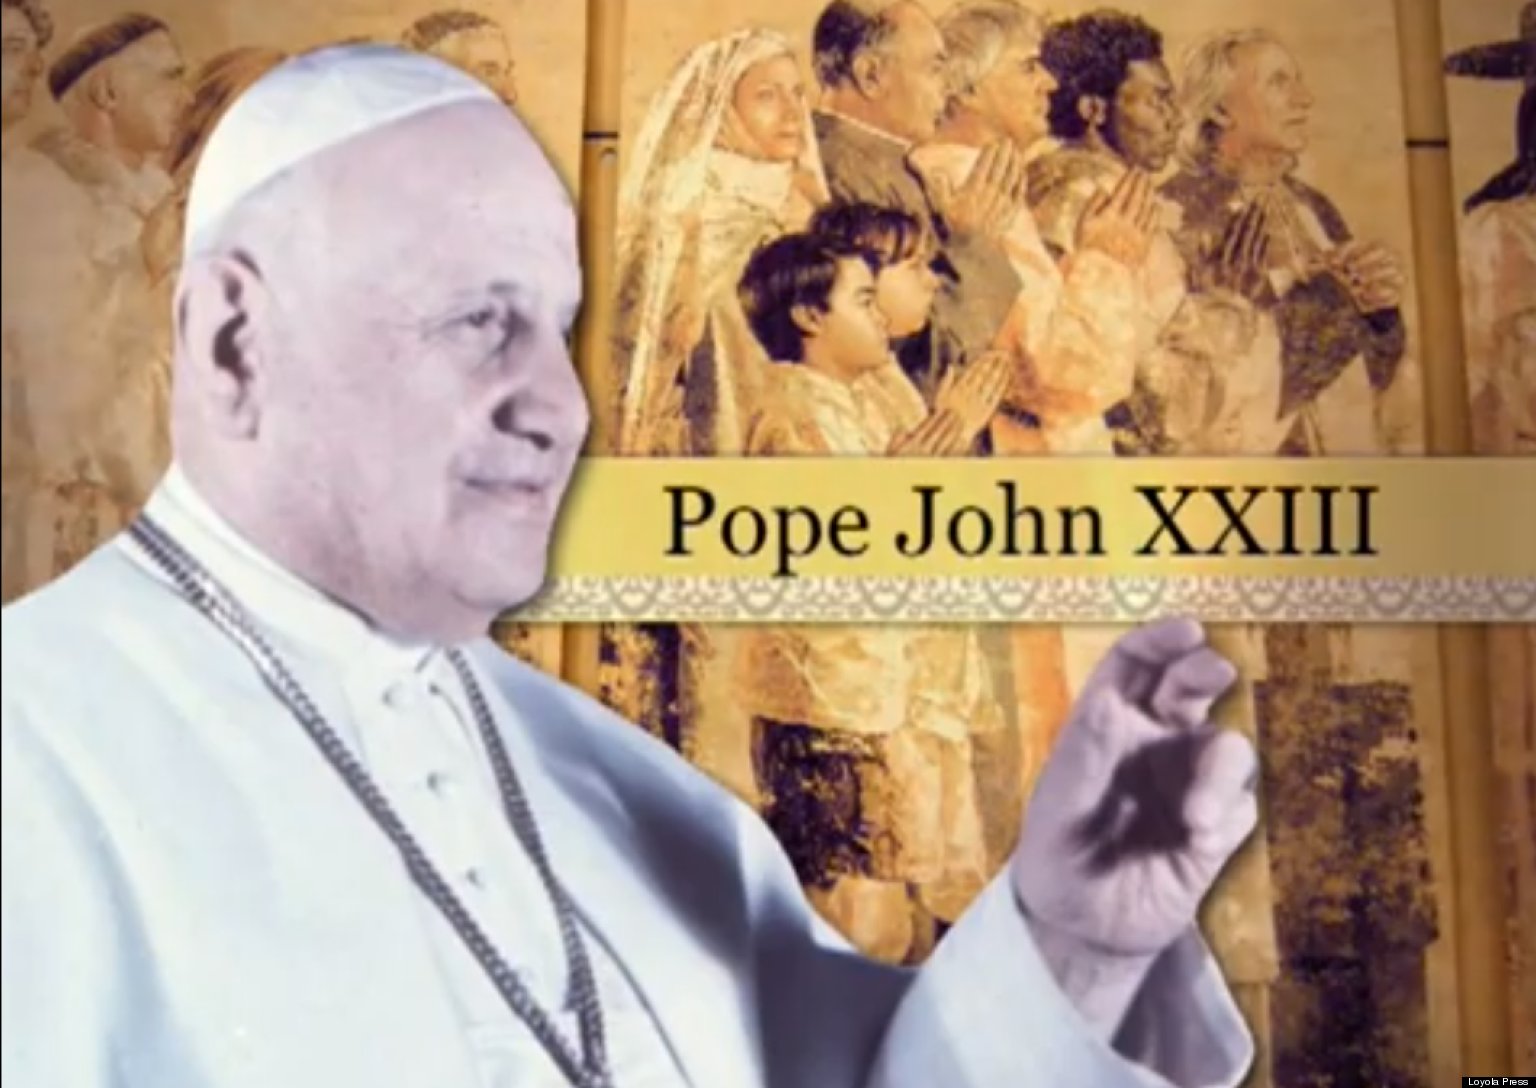 http://i.huffpost.com/gen/1169906/thumbs/o-POPE-JOHN-XXIII-facebook.jpg